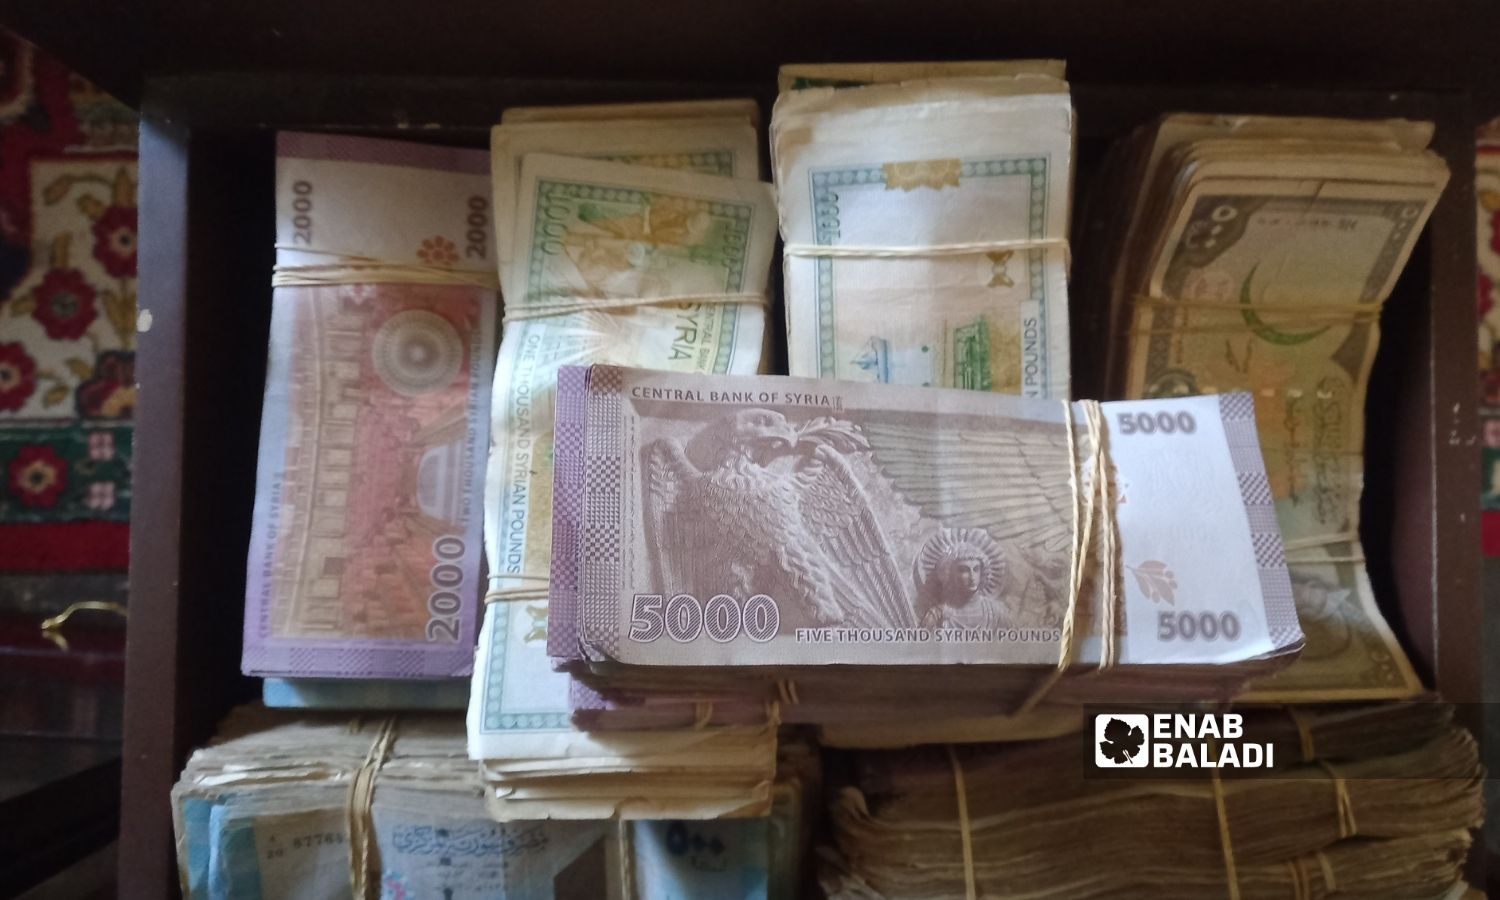 Stacks of Syrian pound notes (Enab Baladi)